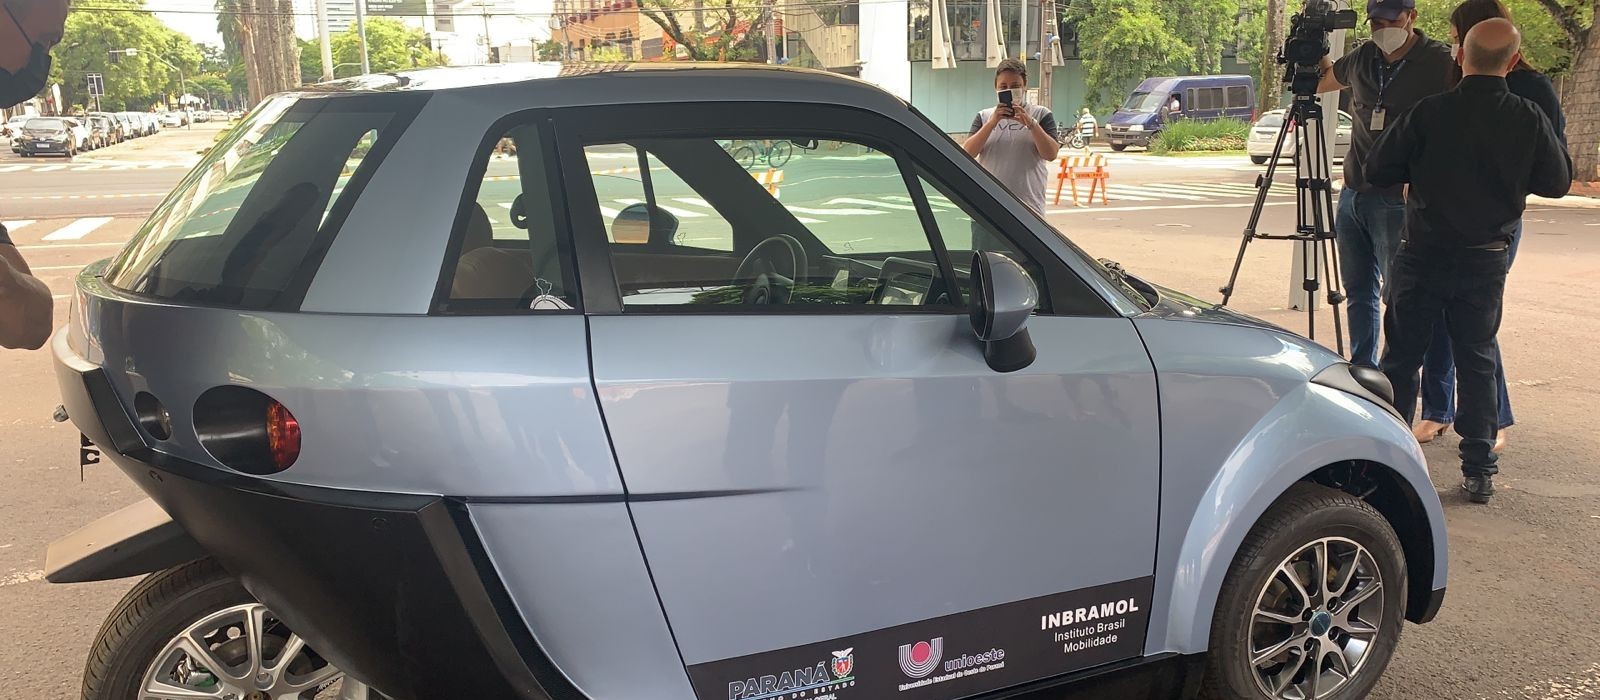 Carro elétrico brasileiro terá autonomia para 200 km e vai custar R$ 95 mil